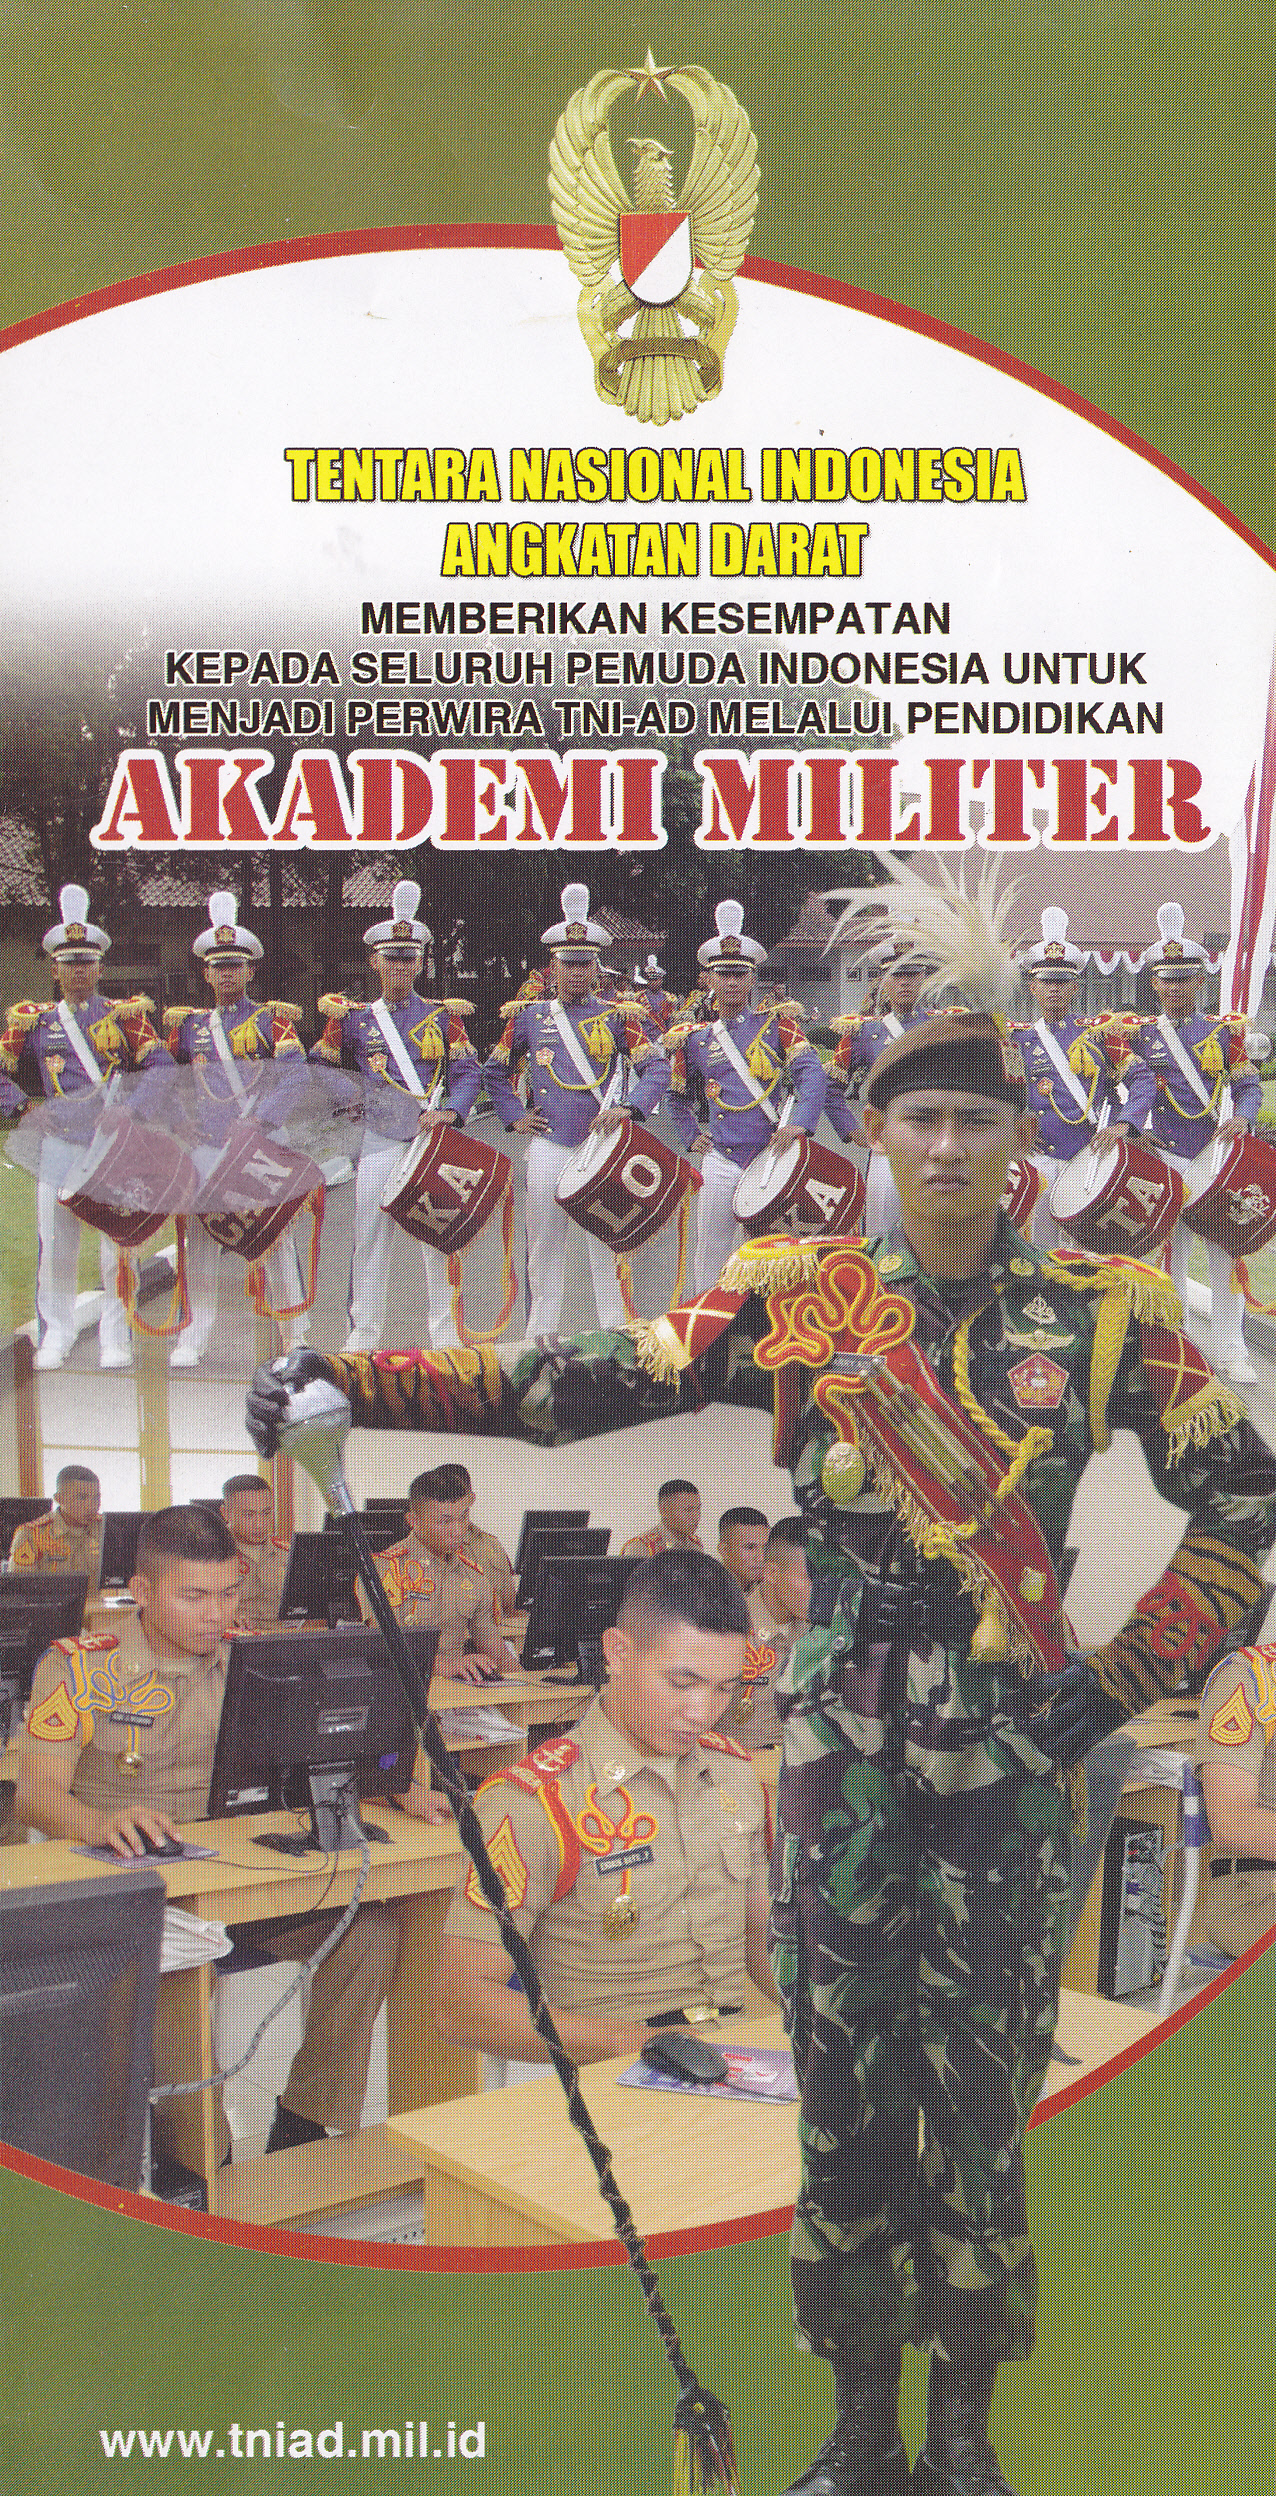 Dukung akademi kemiliteran TNI menerima lulusan SMK